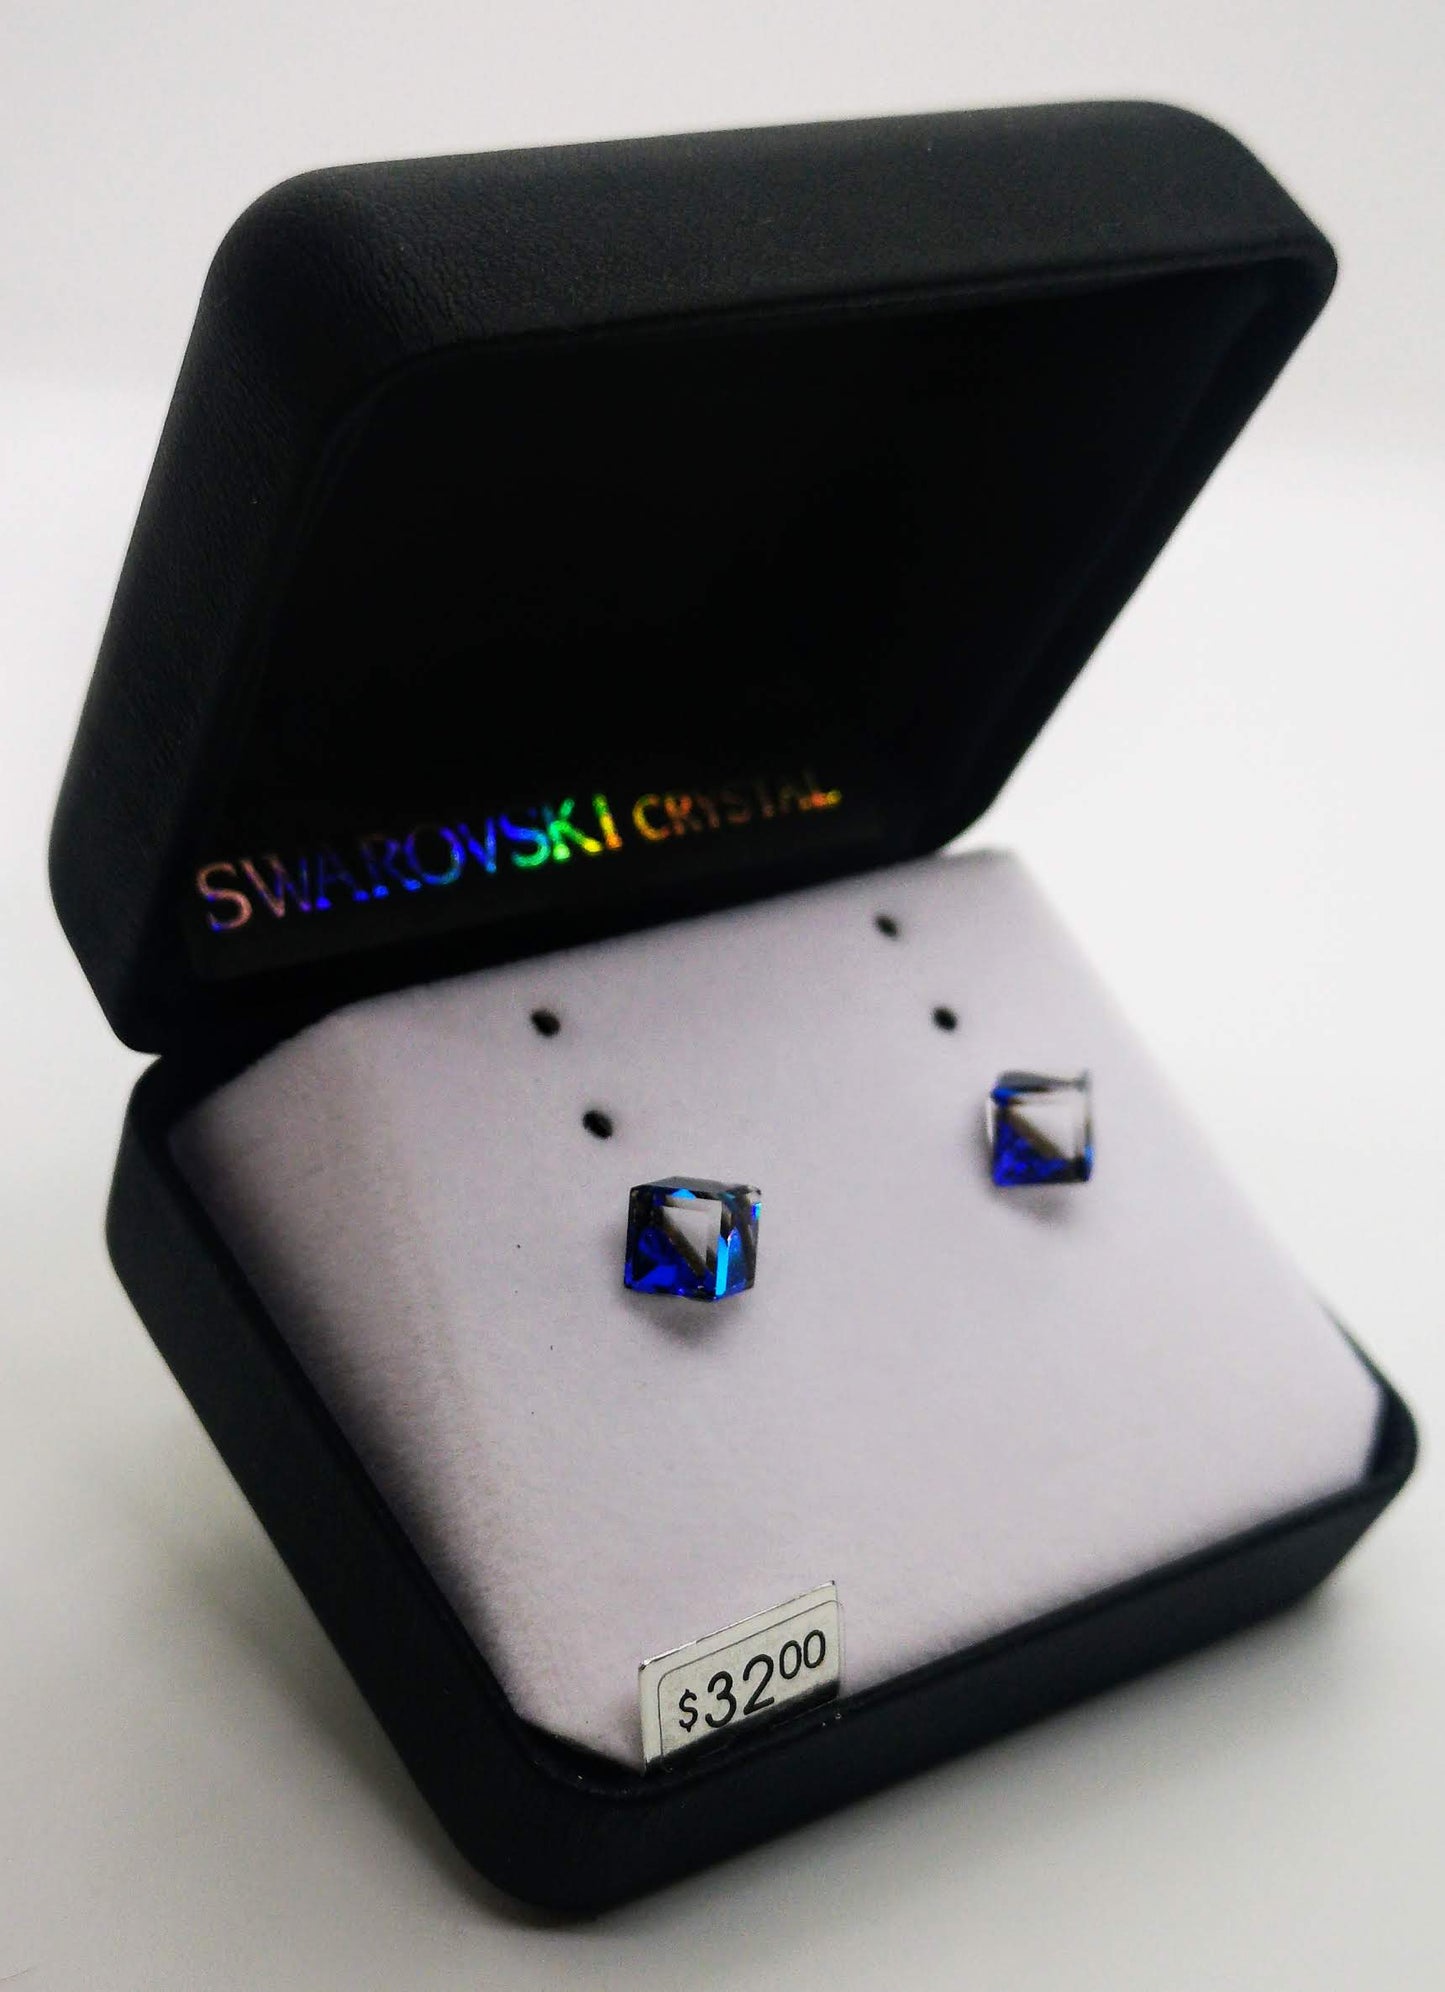 Swarovski Crystal Cubed Blue Stud Earrings